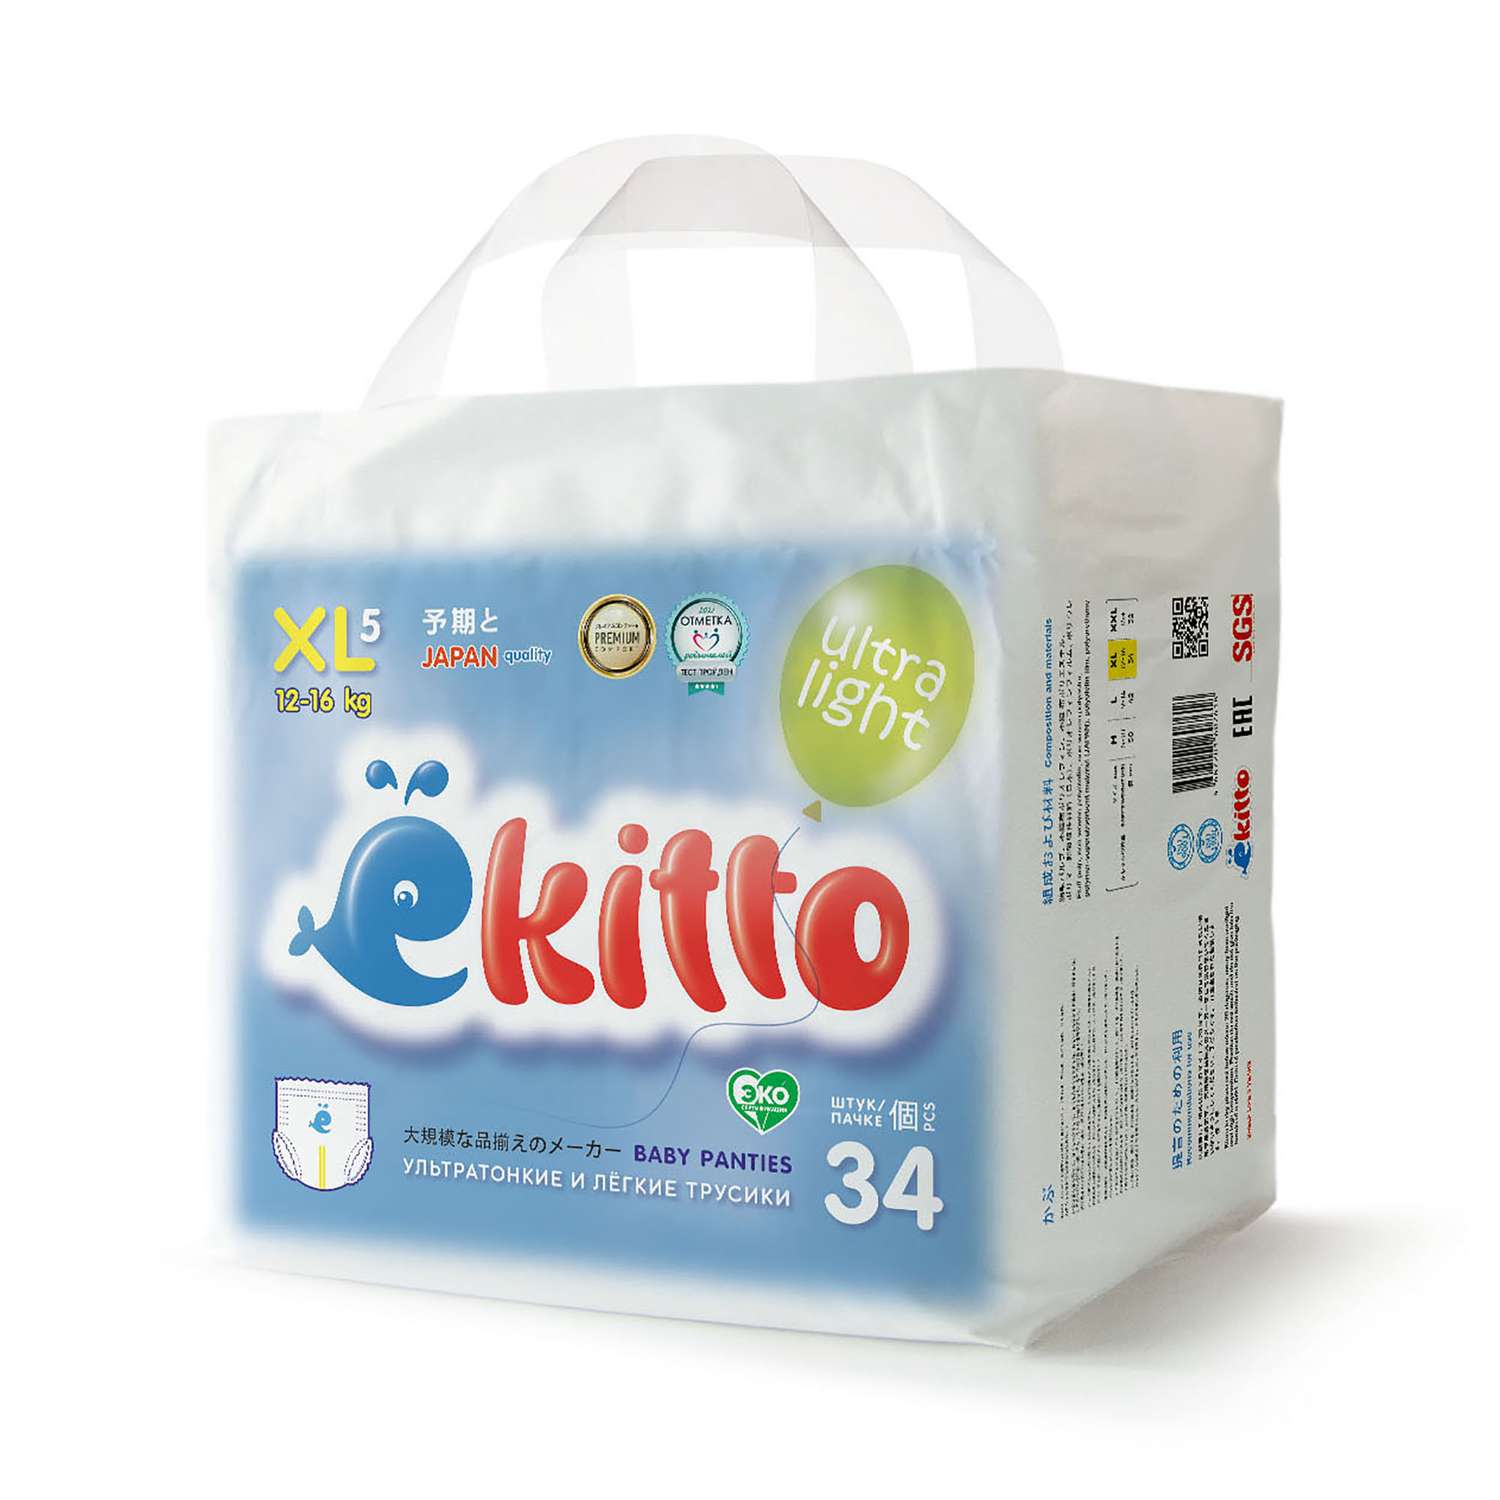 Подгузники трусики Ekitto 5 размер XL для новорожденных детей от 12-17 кг 34 шт - фото 11